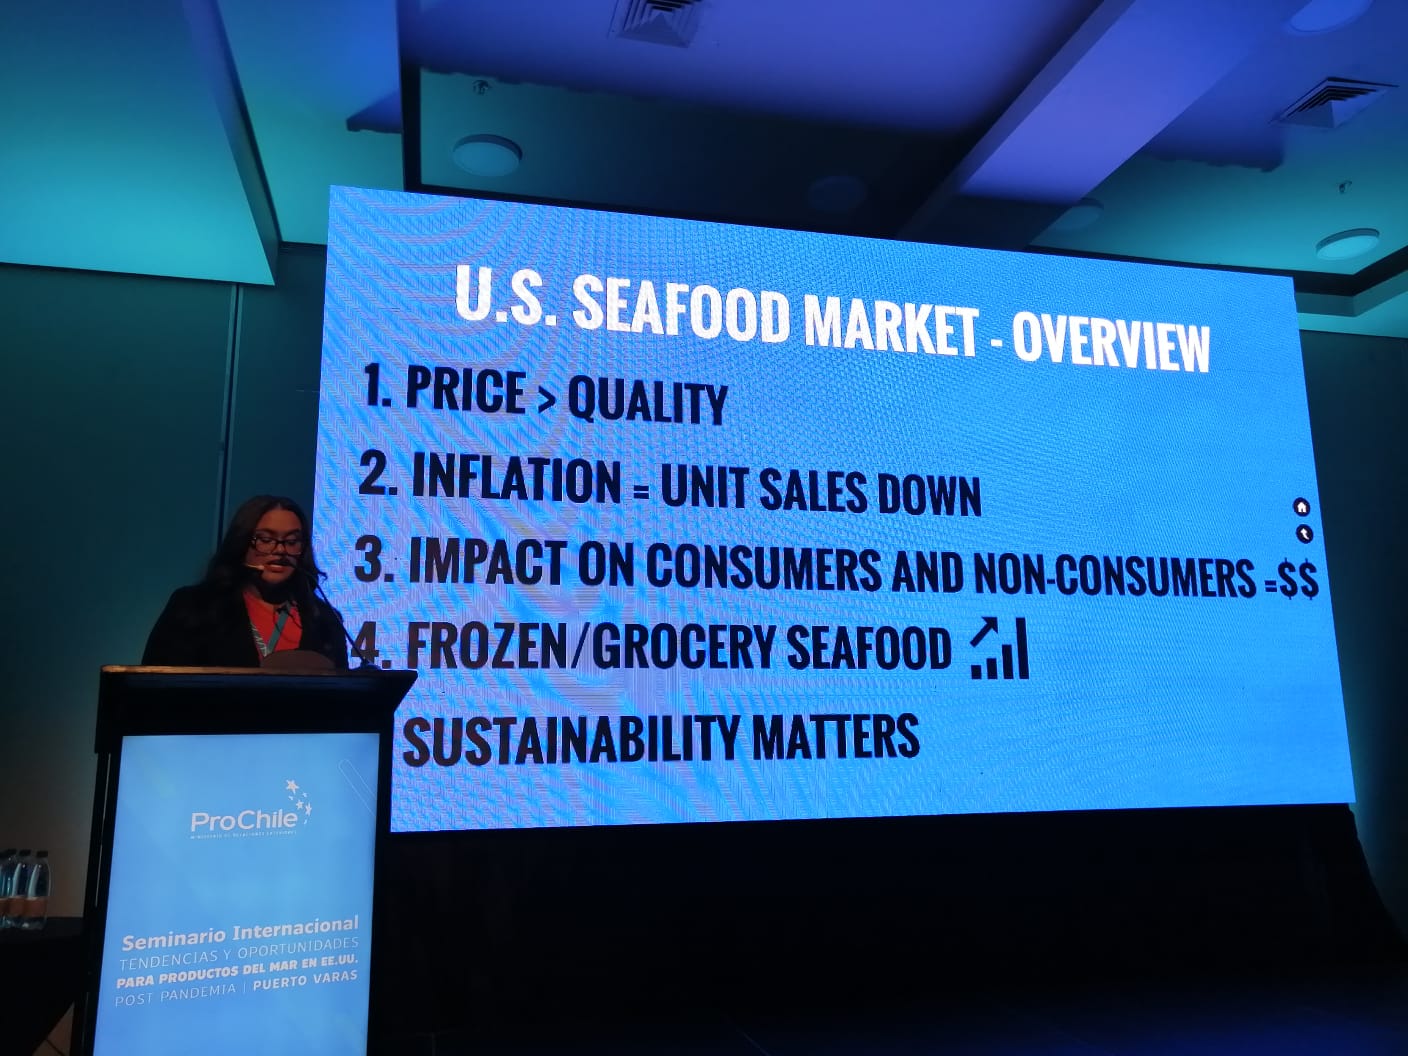 [LA + LEÍDA EL VIERNES] Con lleno total se llevó a cabo seminario sobre tendencias y oportunidades para productos del mar en EE.UU.